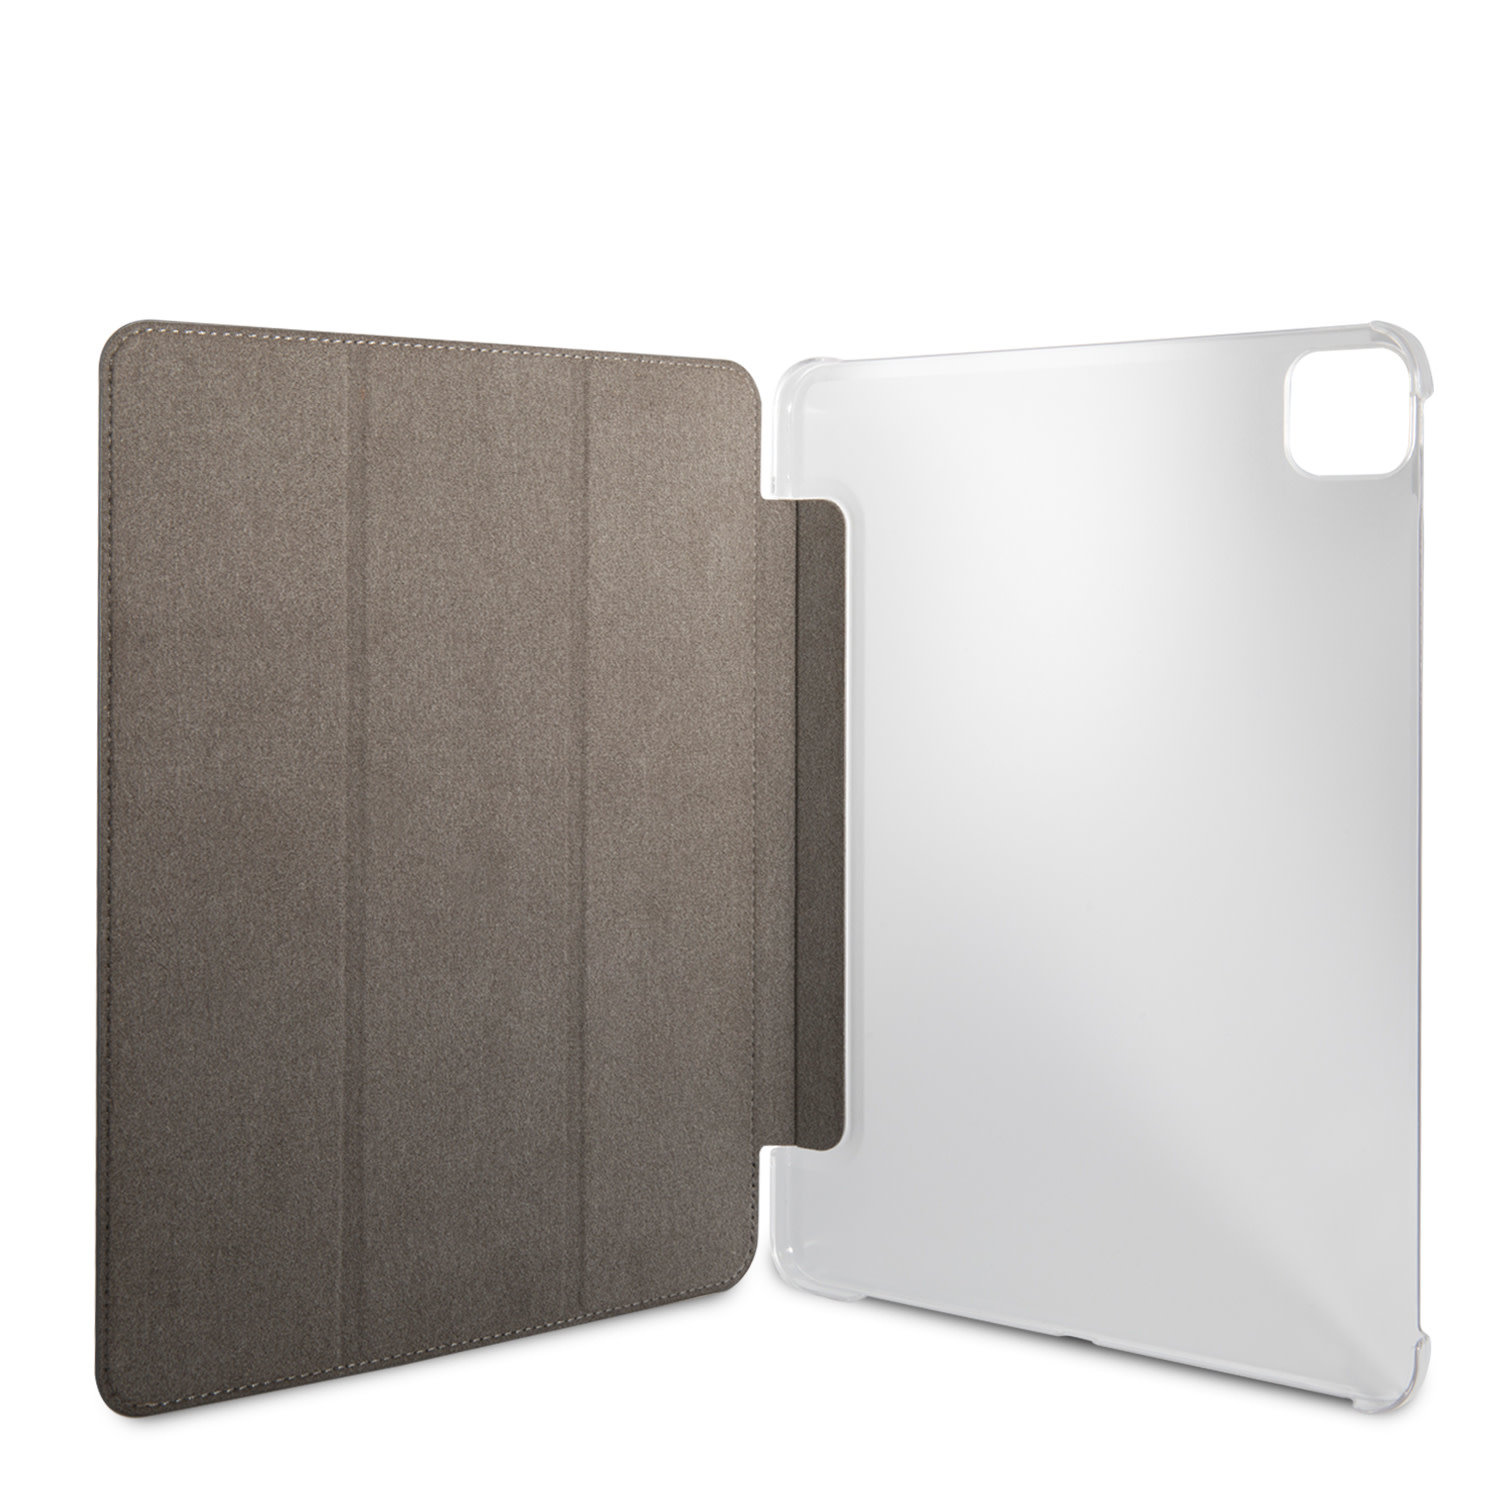 Guess Folio iPad Pro 11 colos (2021) könyvtok - Pi